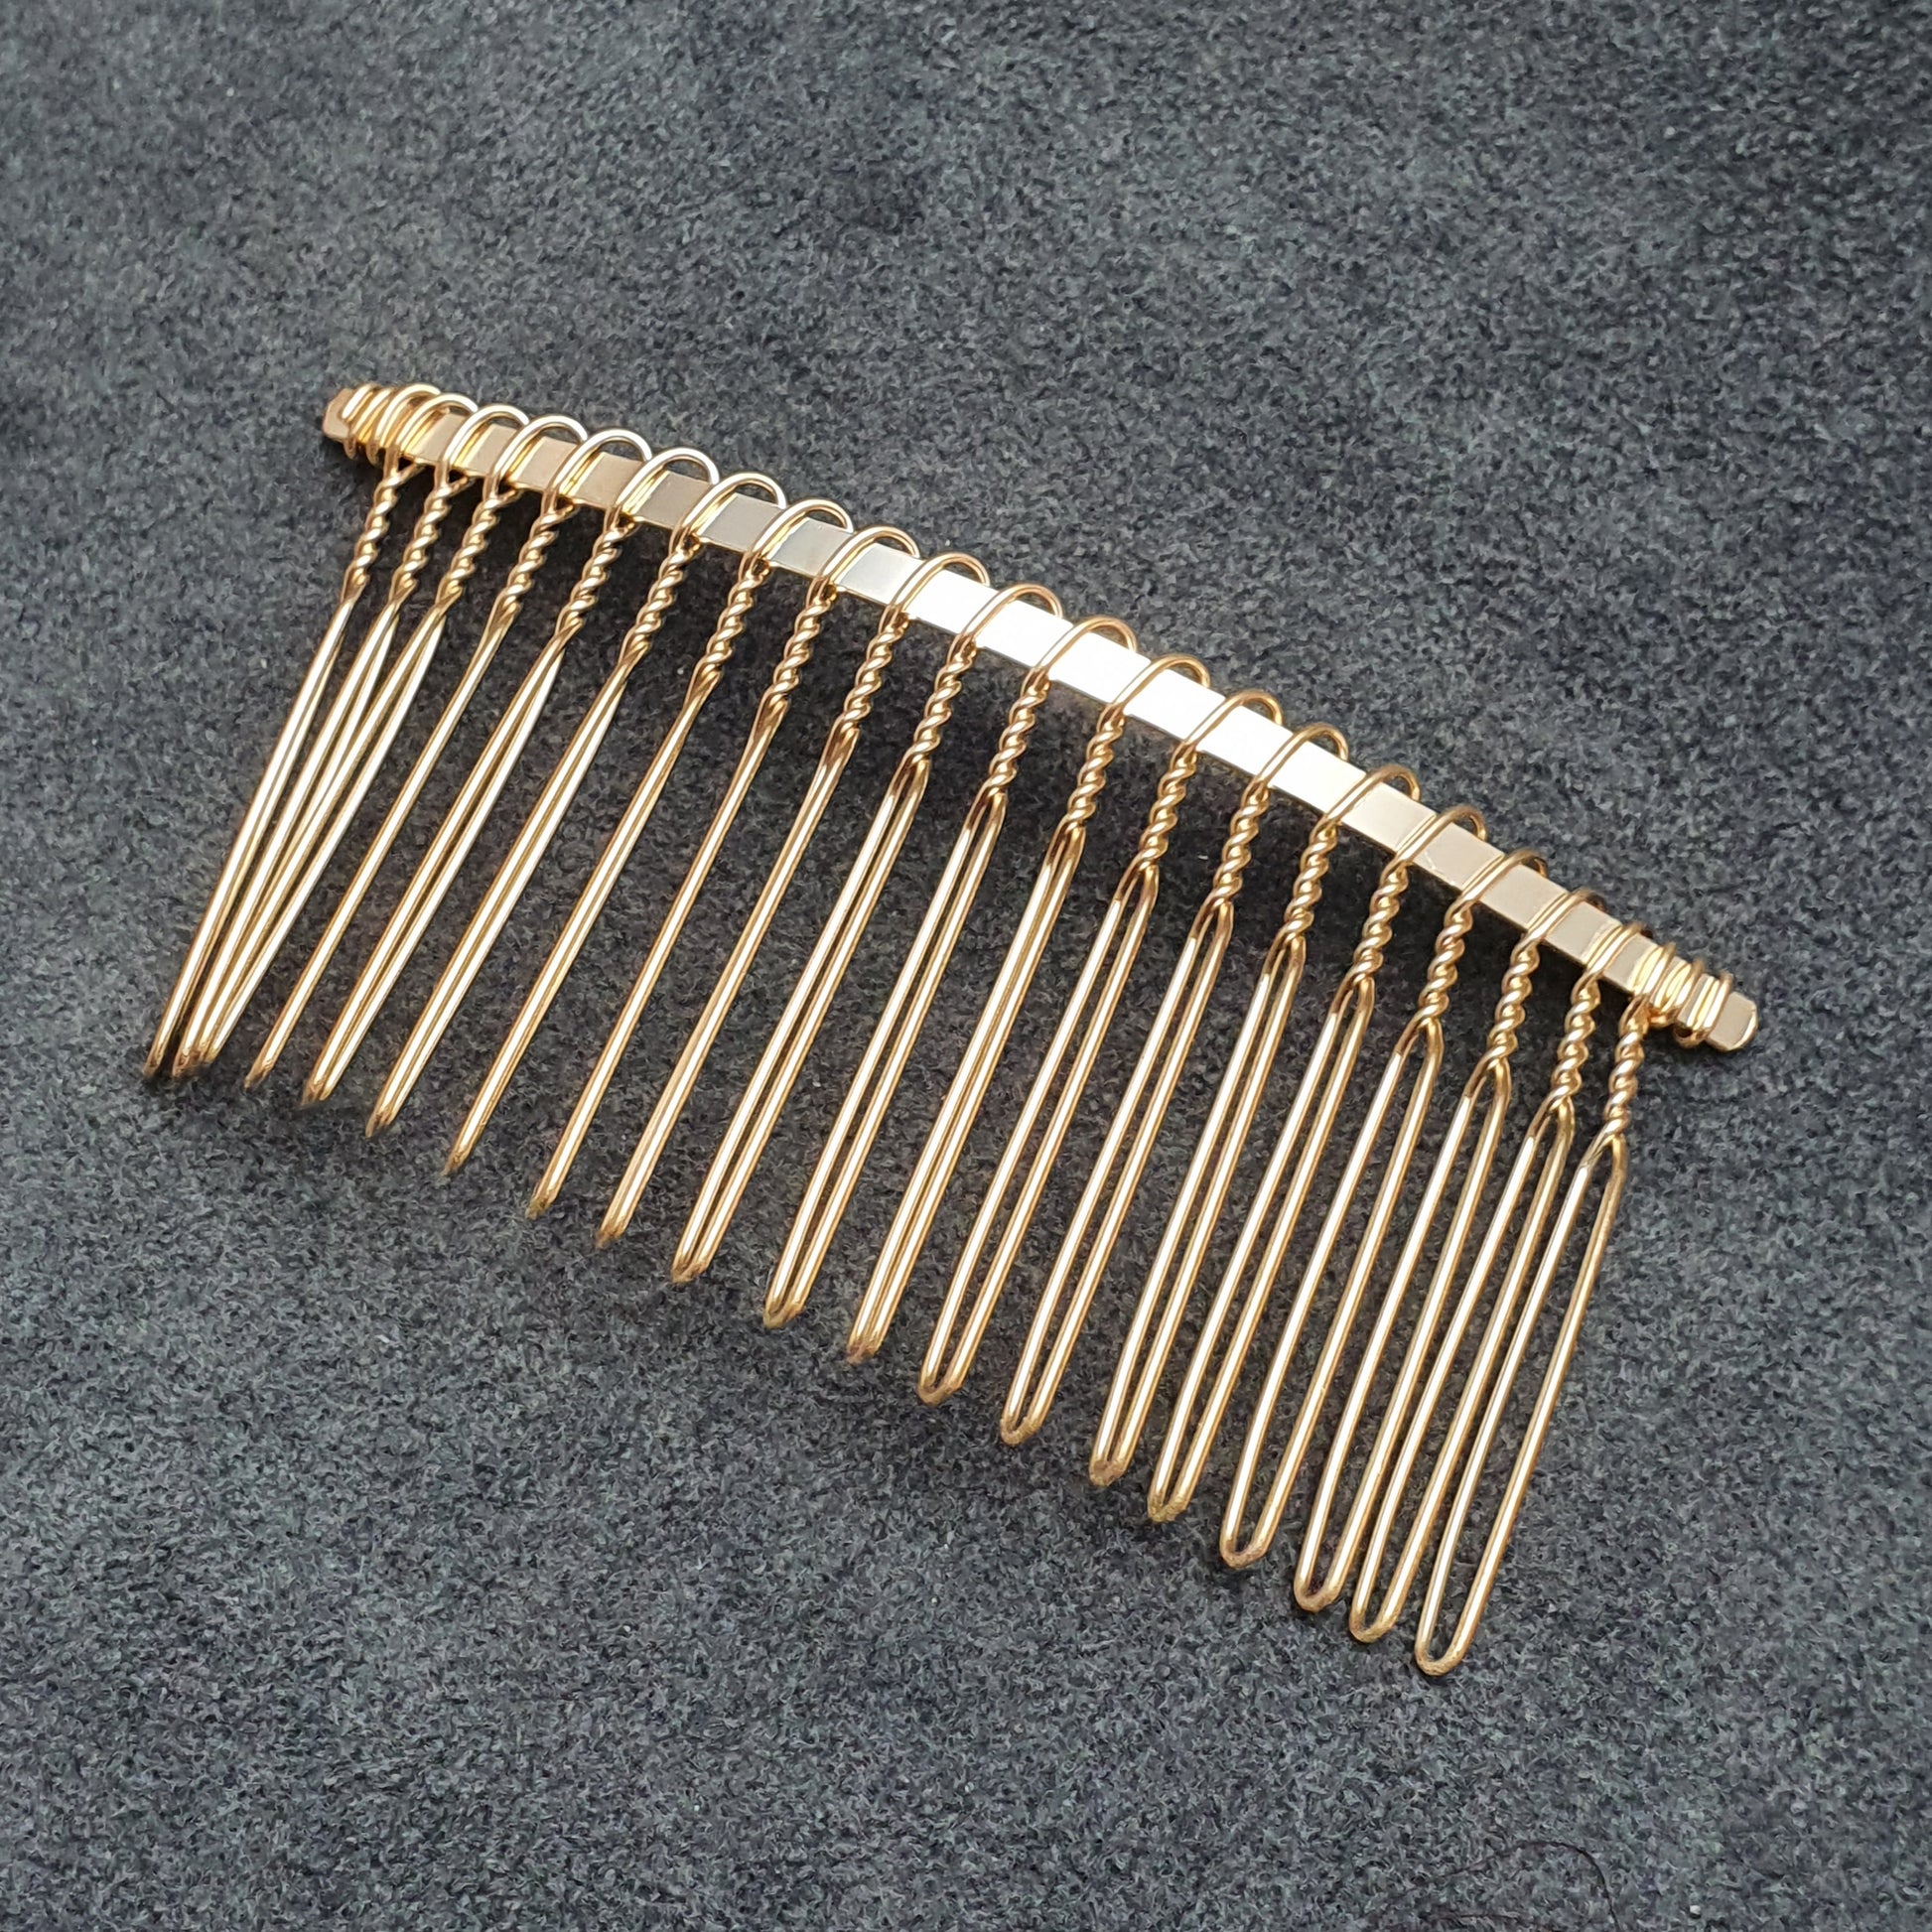 Haarkamm zum beperlen in goldfarbig, aus Draht, 20 Zähne, 7,5cm